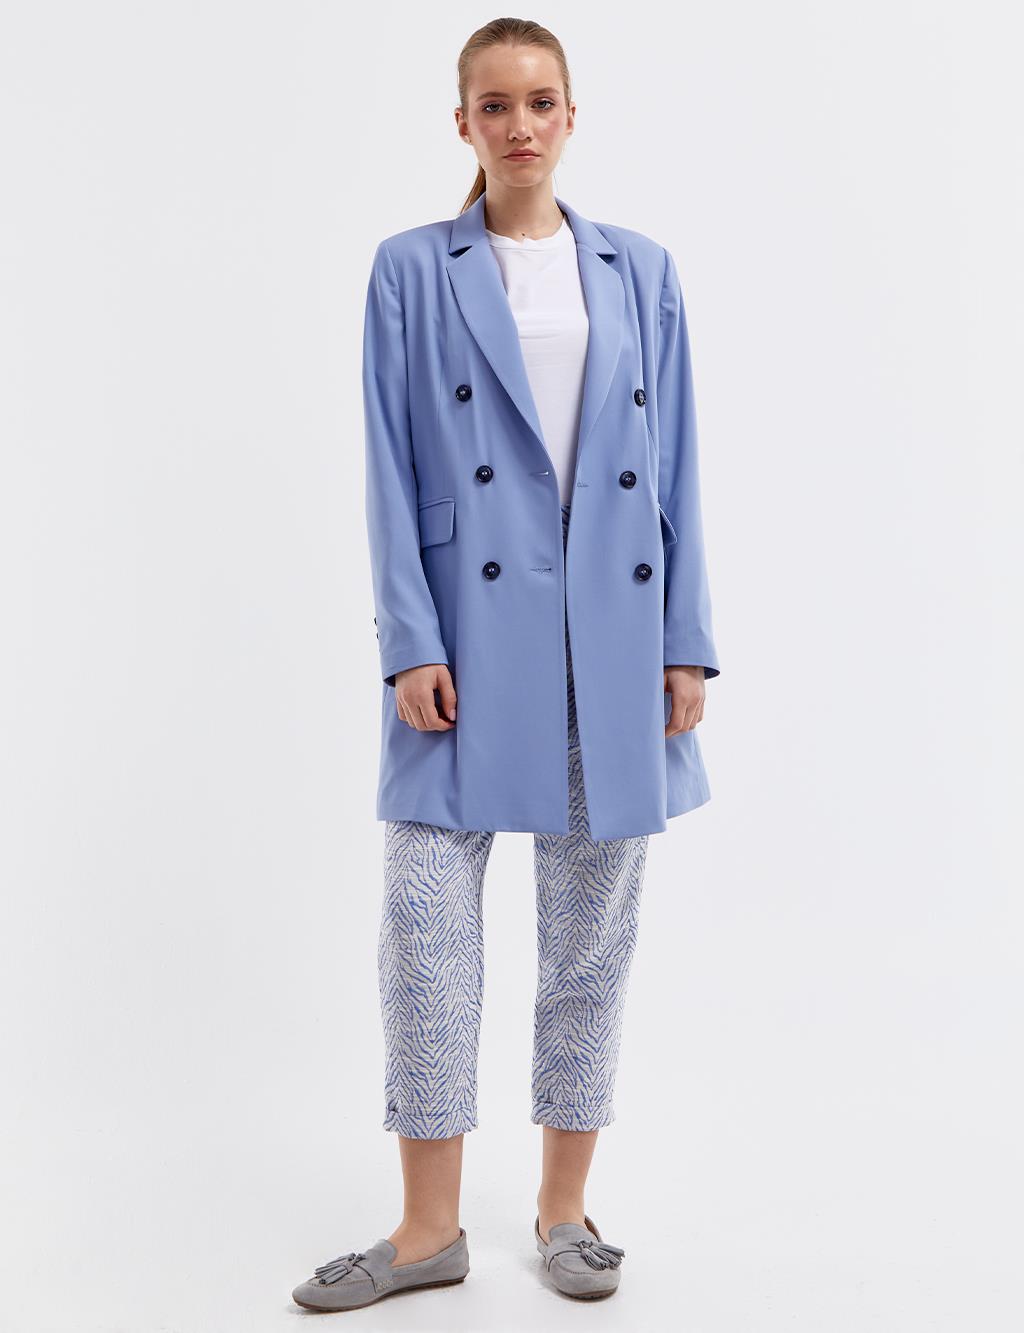 Базовый пиджак-пиджак Небесно-голубой Kayra цена и фото